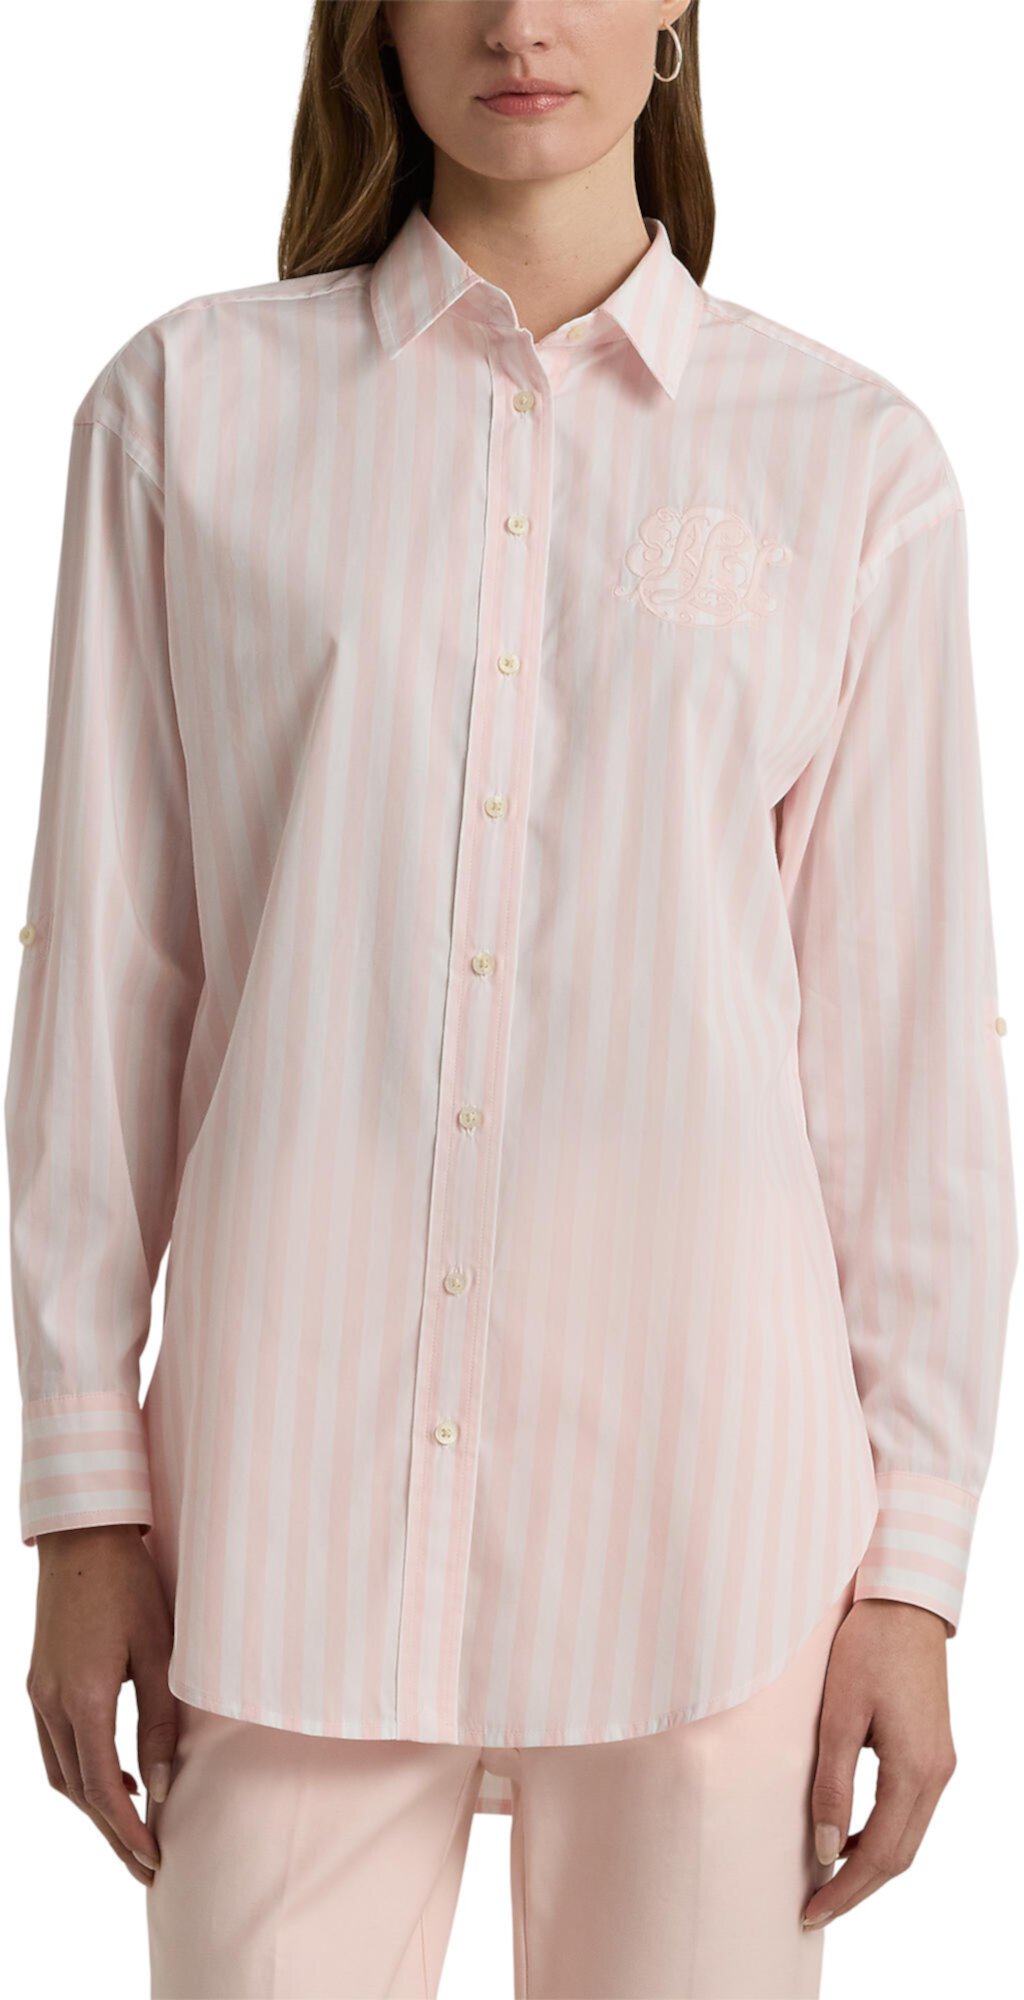 Oversize Striped Cotton Broadcloth Shirt LAUREN Ralph Lauren